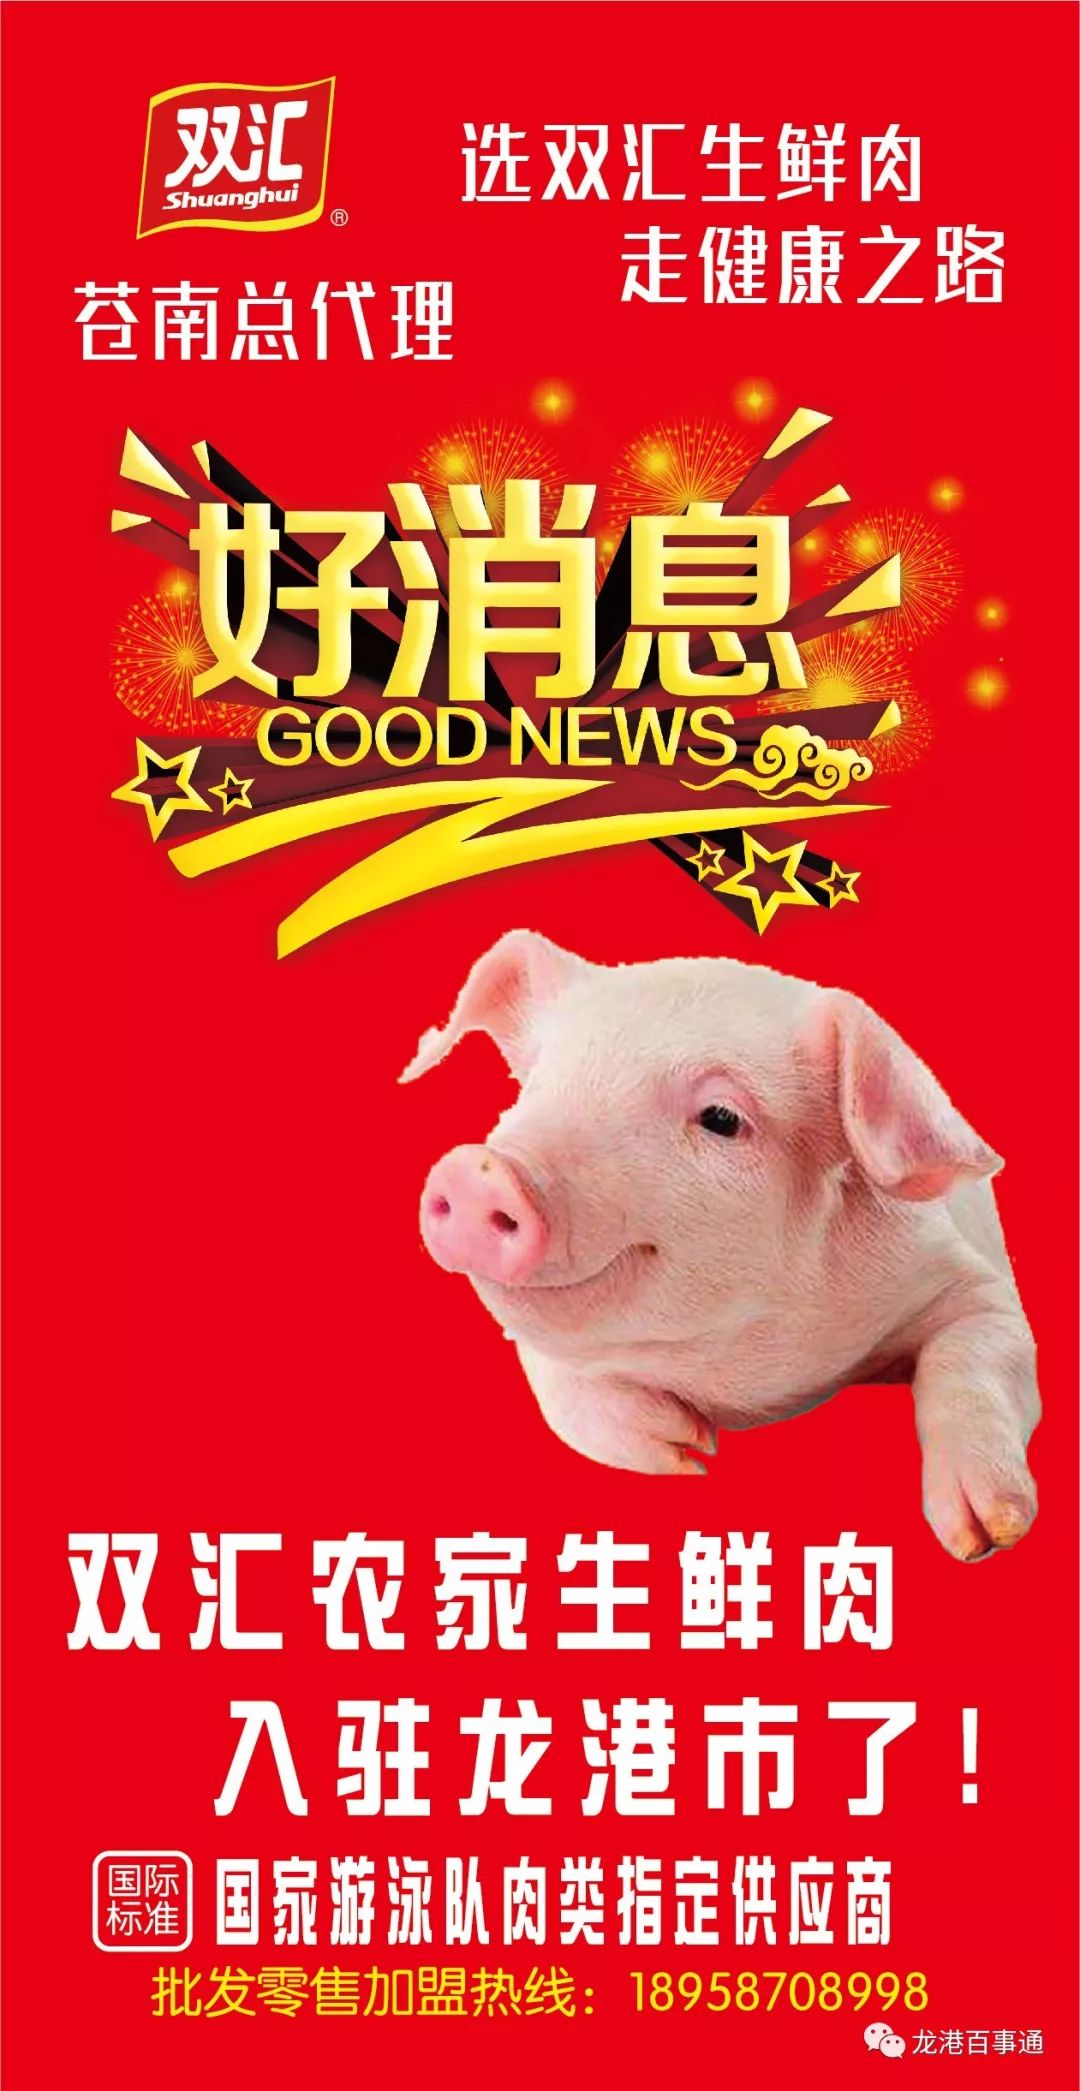 猪肉特价推广广告牌图片